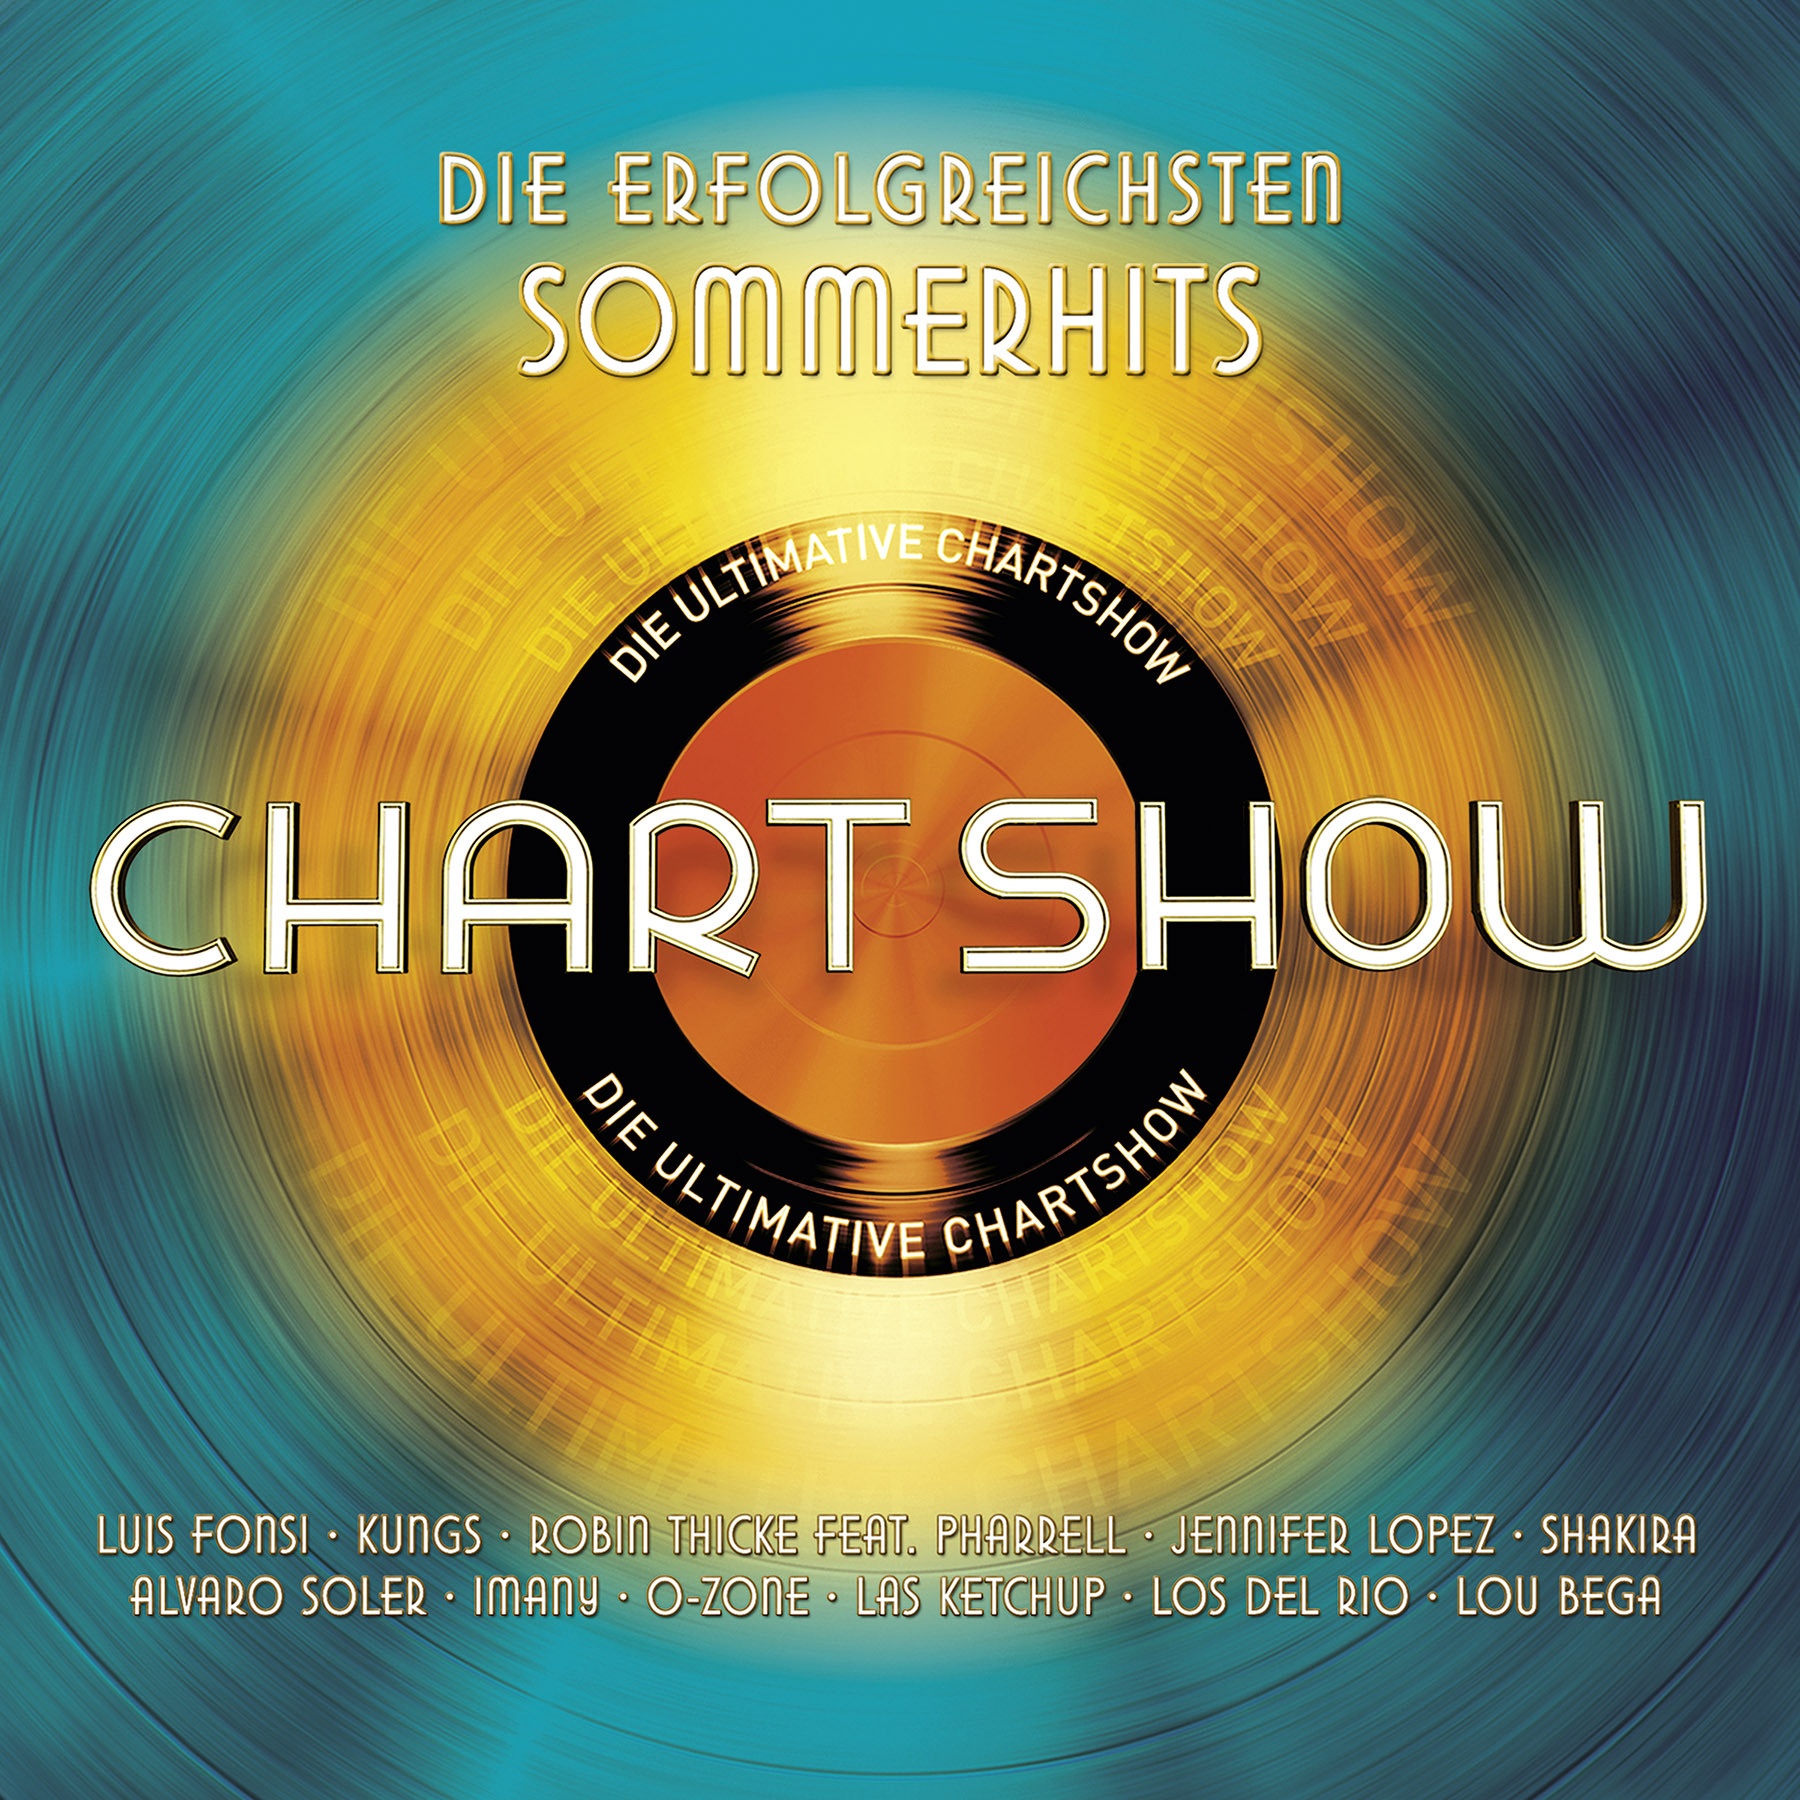 Die ultimative Chartshow - Die erfolgreichsten Sommer-Hits (2 CDs) - Various. (CD)